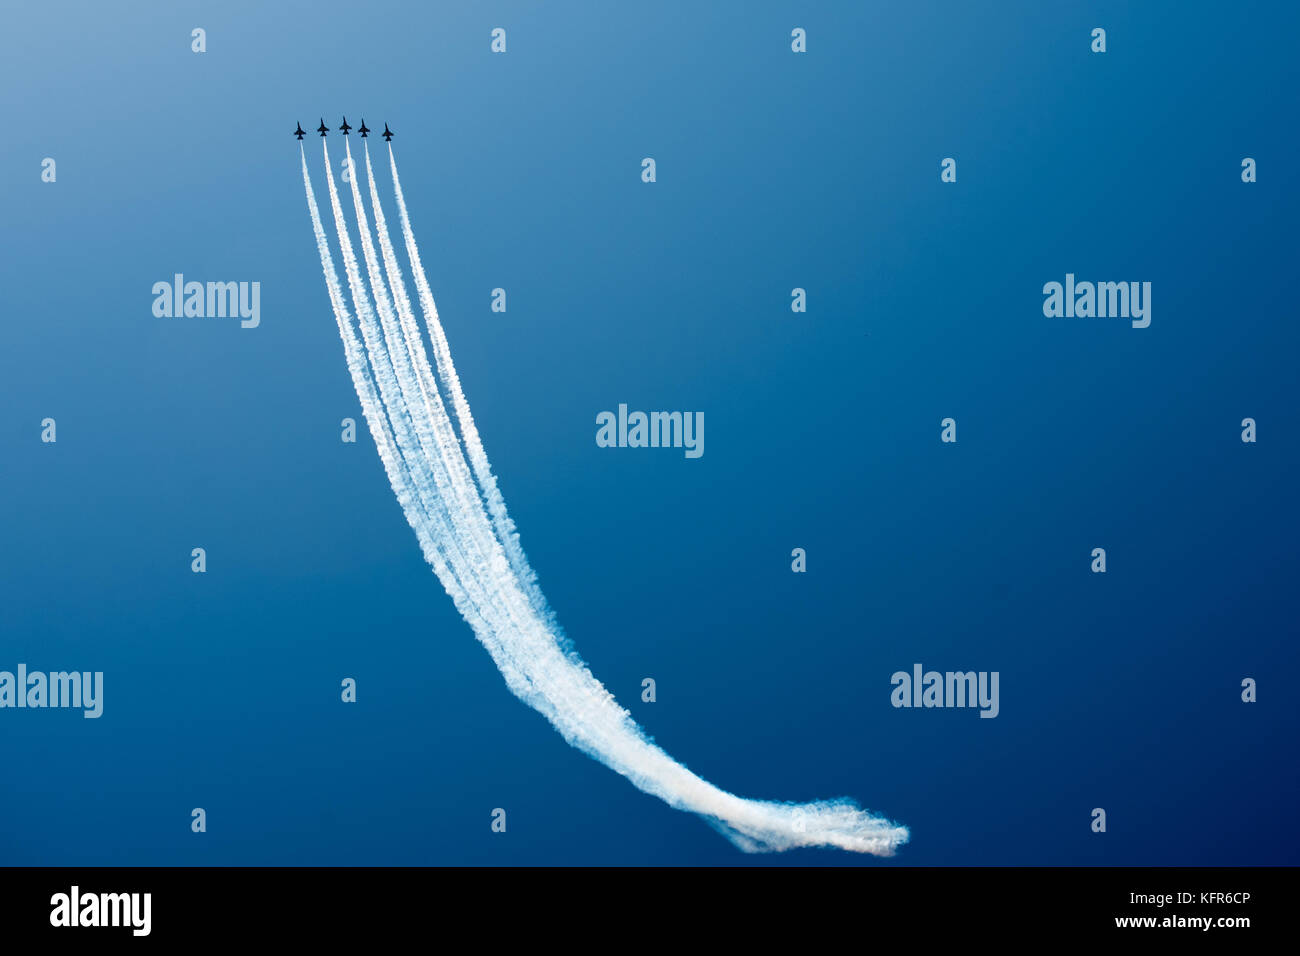 Aerei a. airshow acrobatico, display di volo Foto Stock